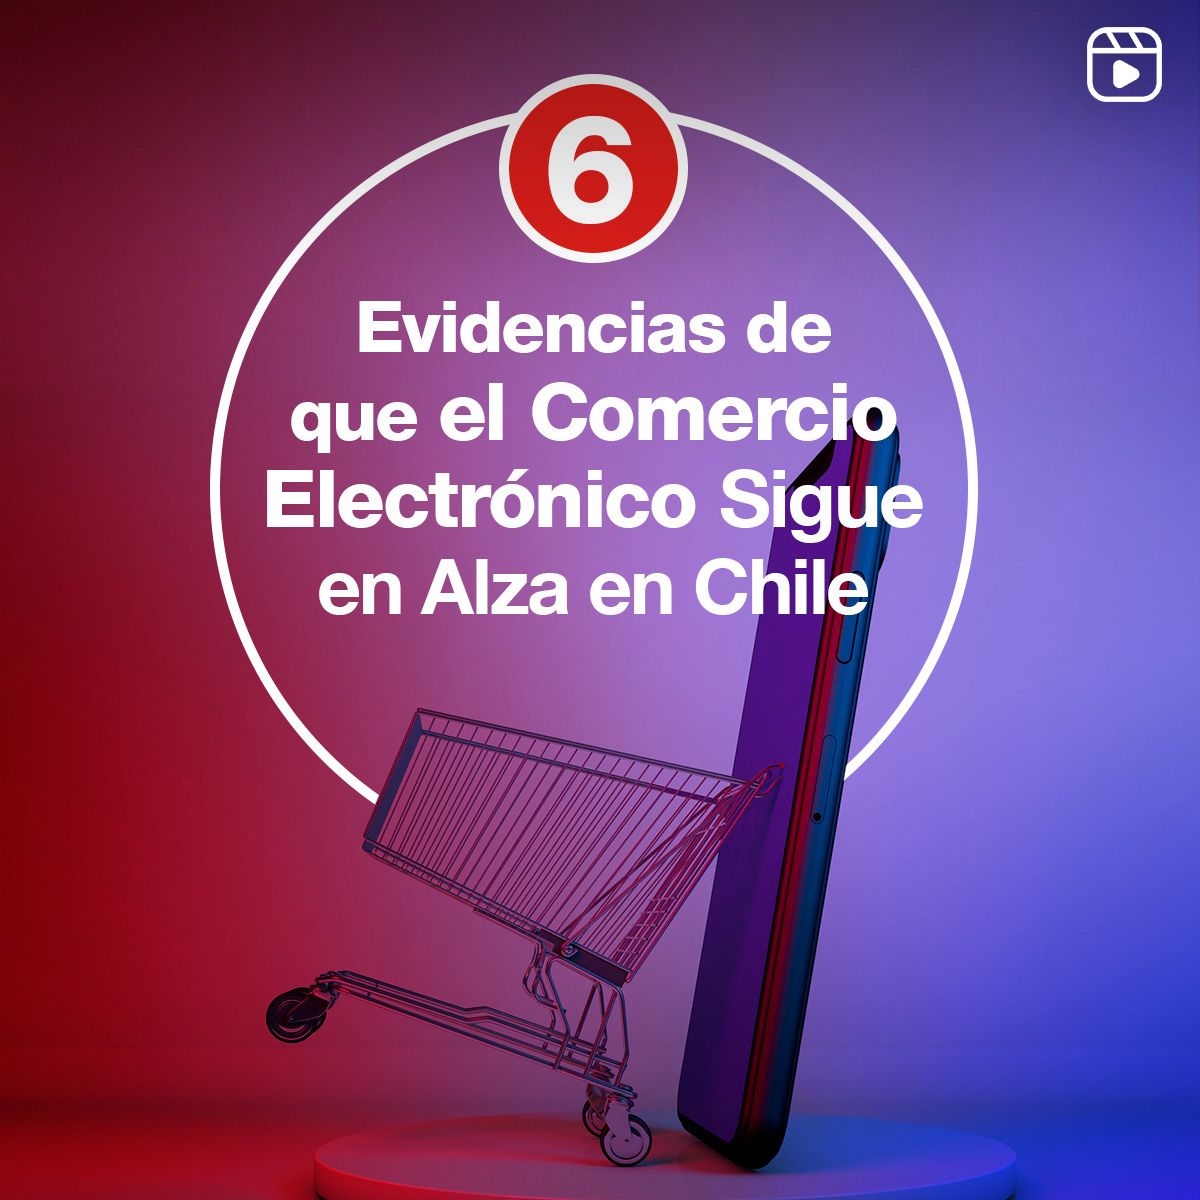 6 Evidencias de que el Comercio Electrónico Sigue en Alza en Chile